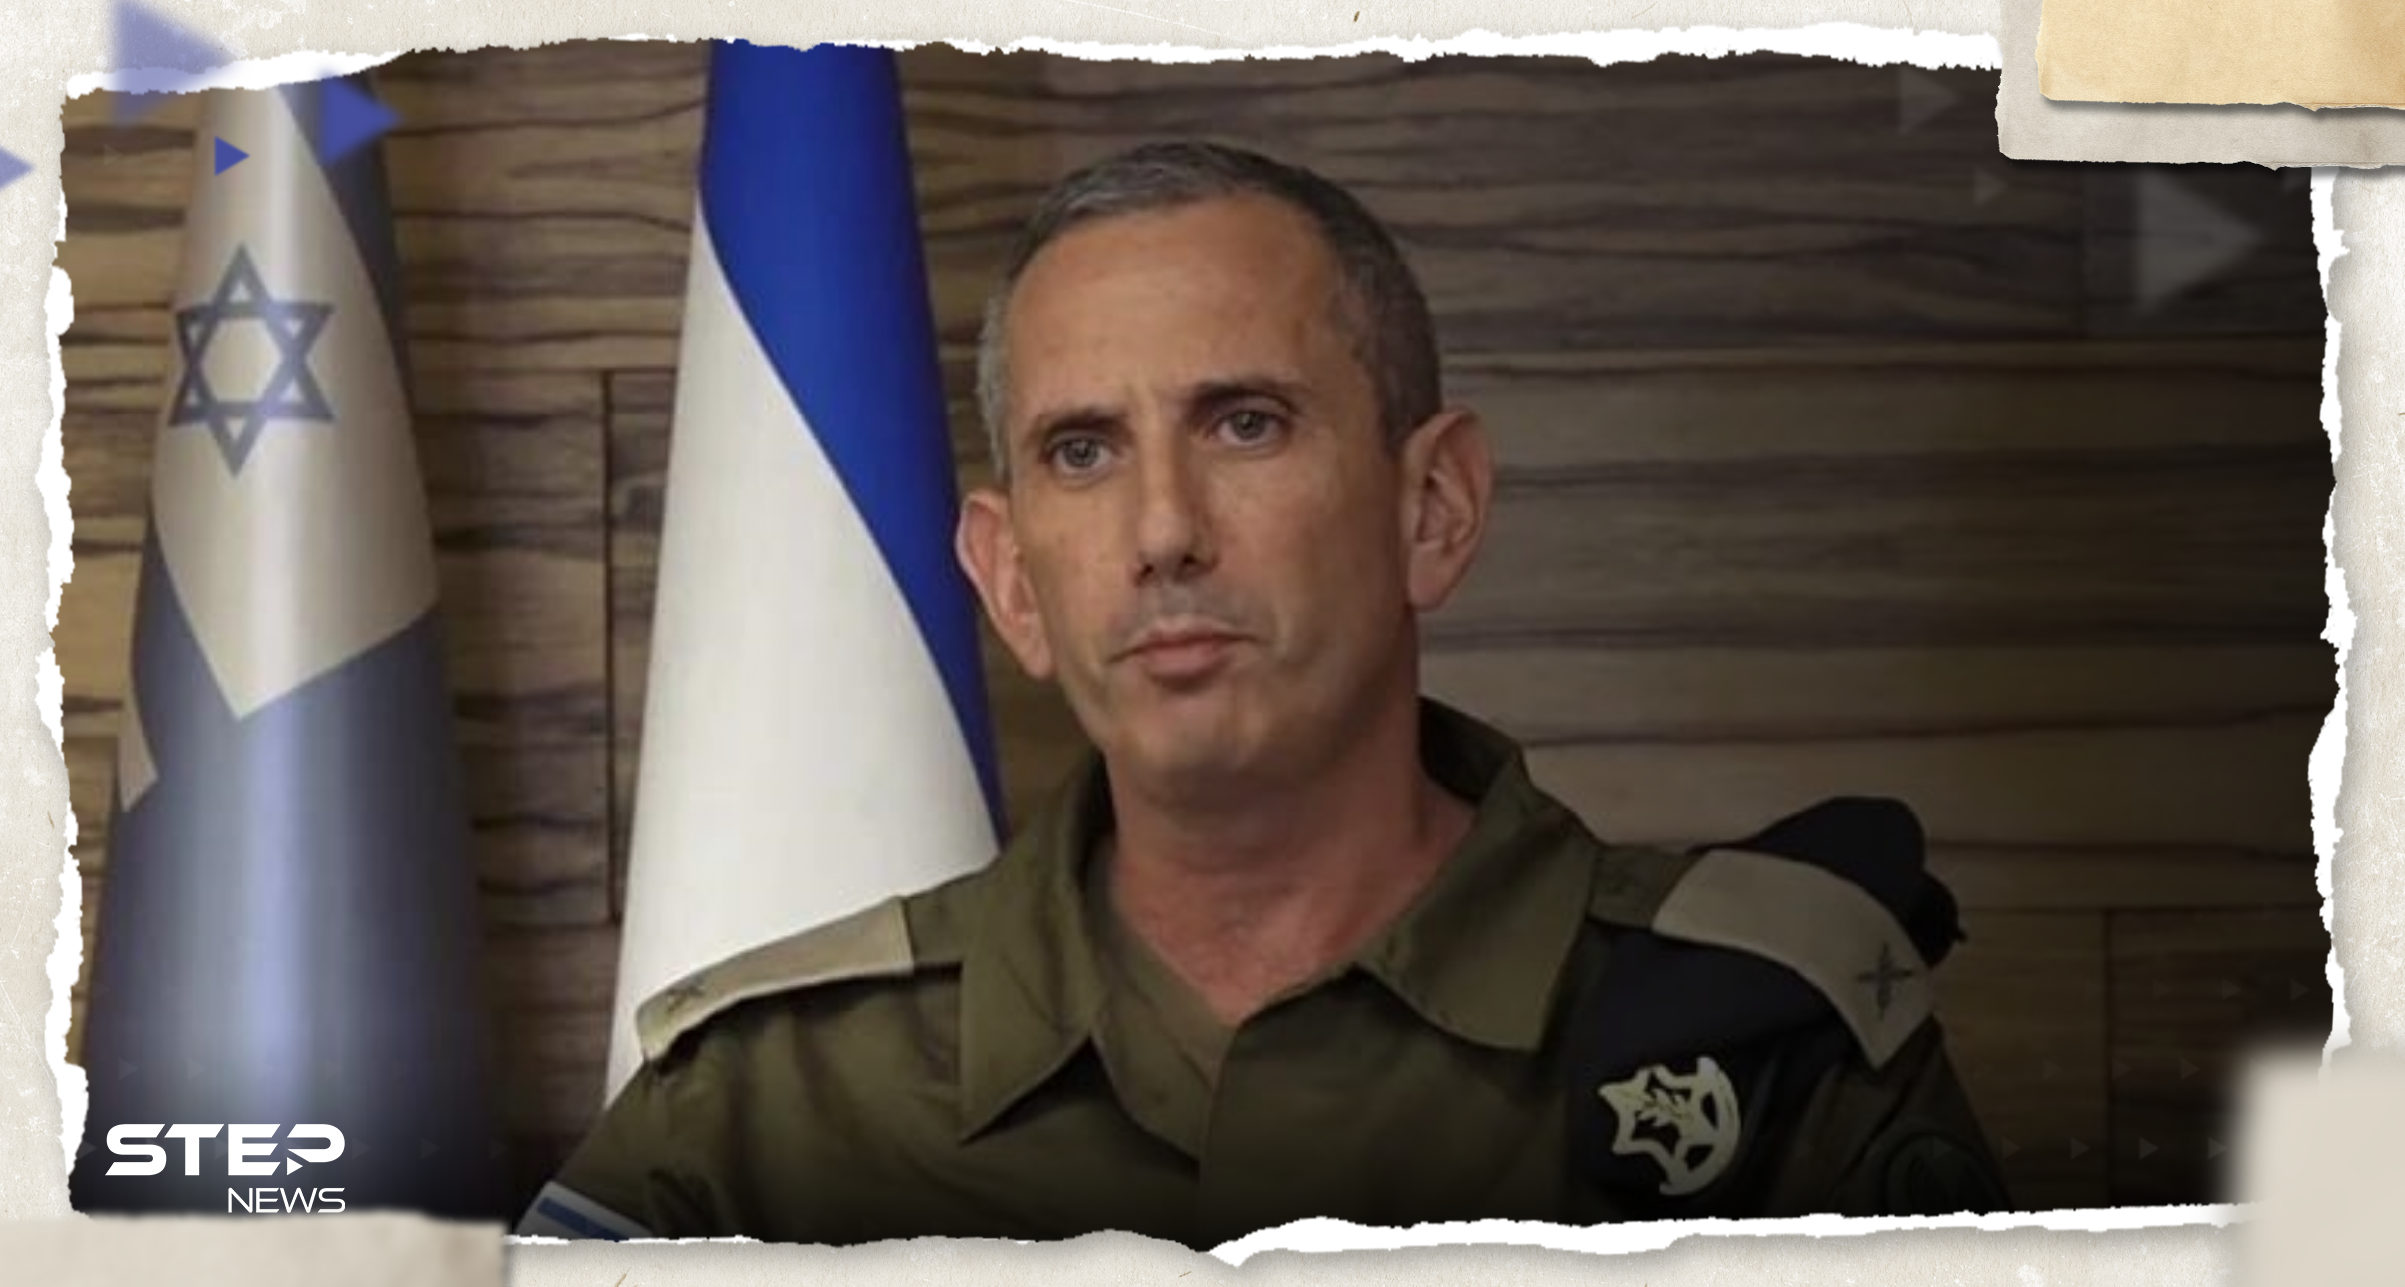 الجيش الإسرائيلي يكشف عن "مفاجأة" وصلتهم مع الأسيرات قادمة من حماس